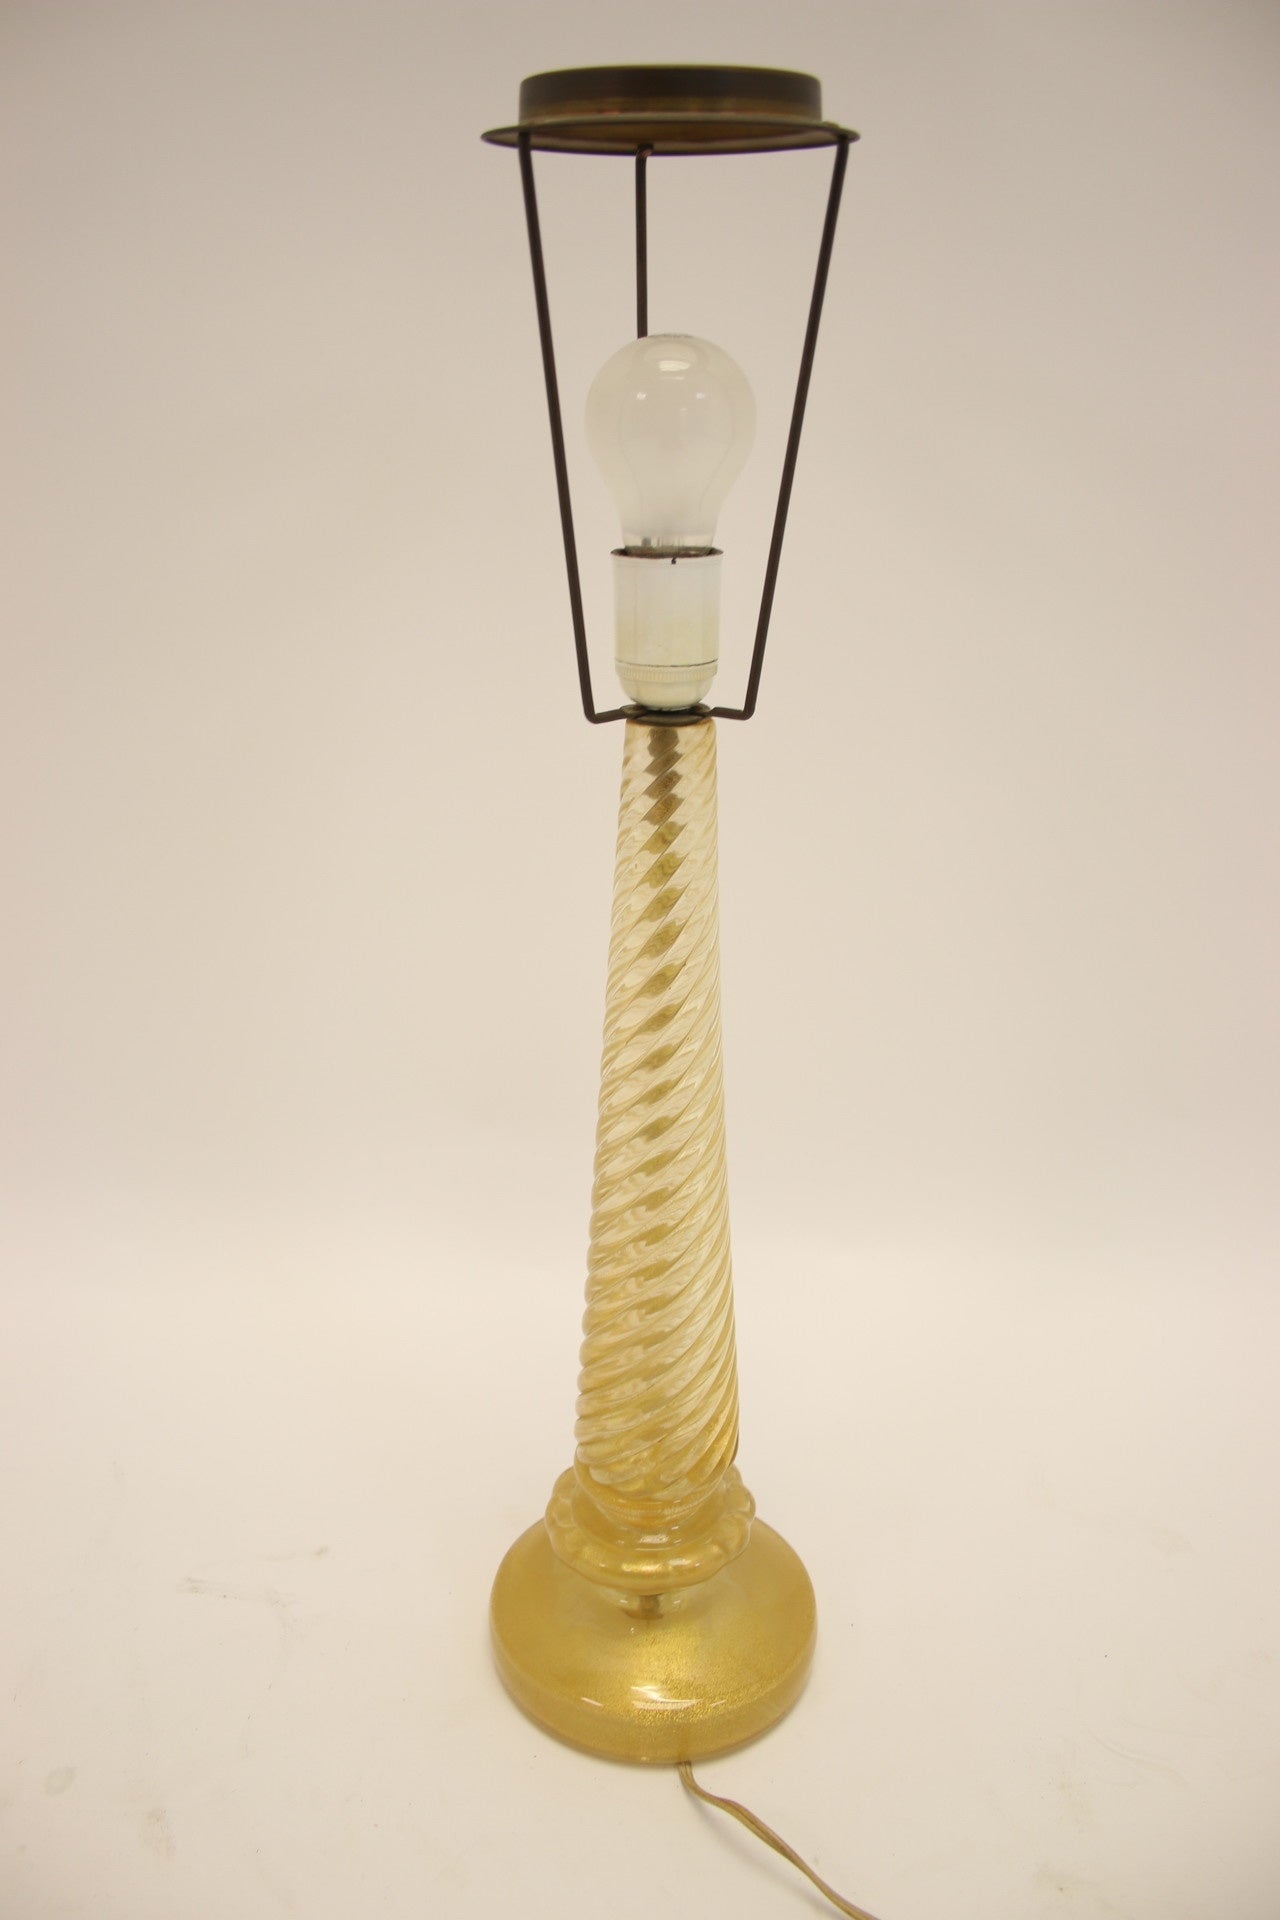 Murano Italy Gouden Gedraaide Lamp voet 50 cm voorkant